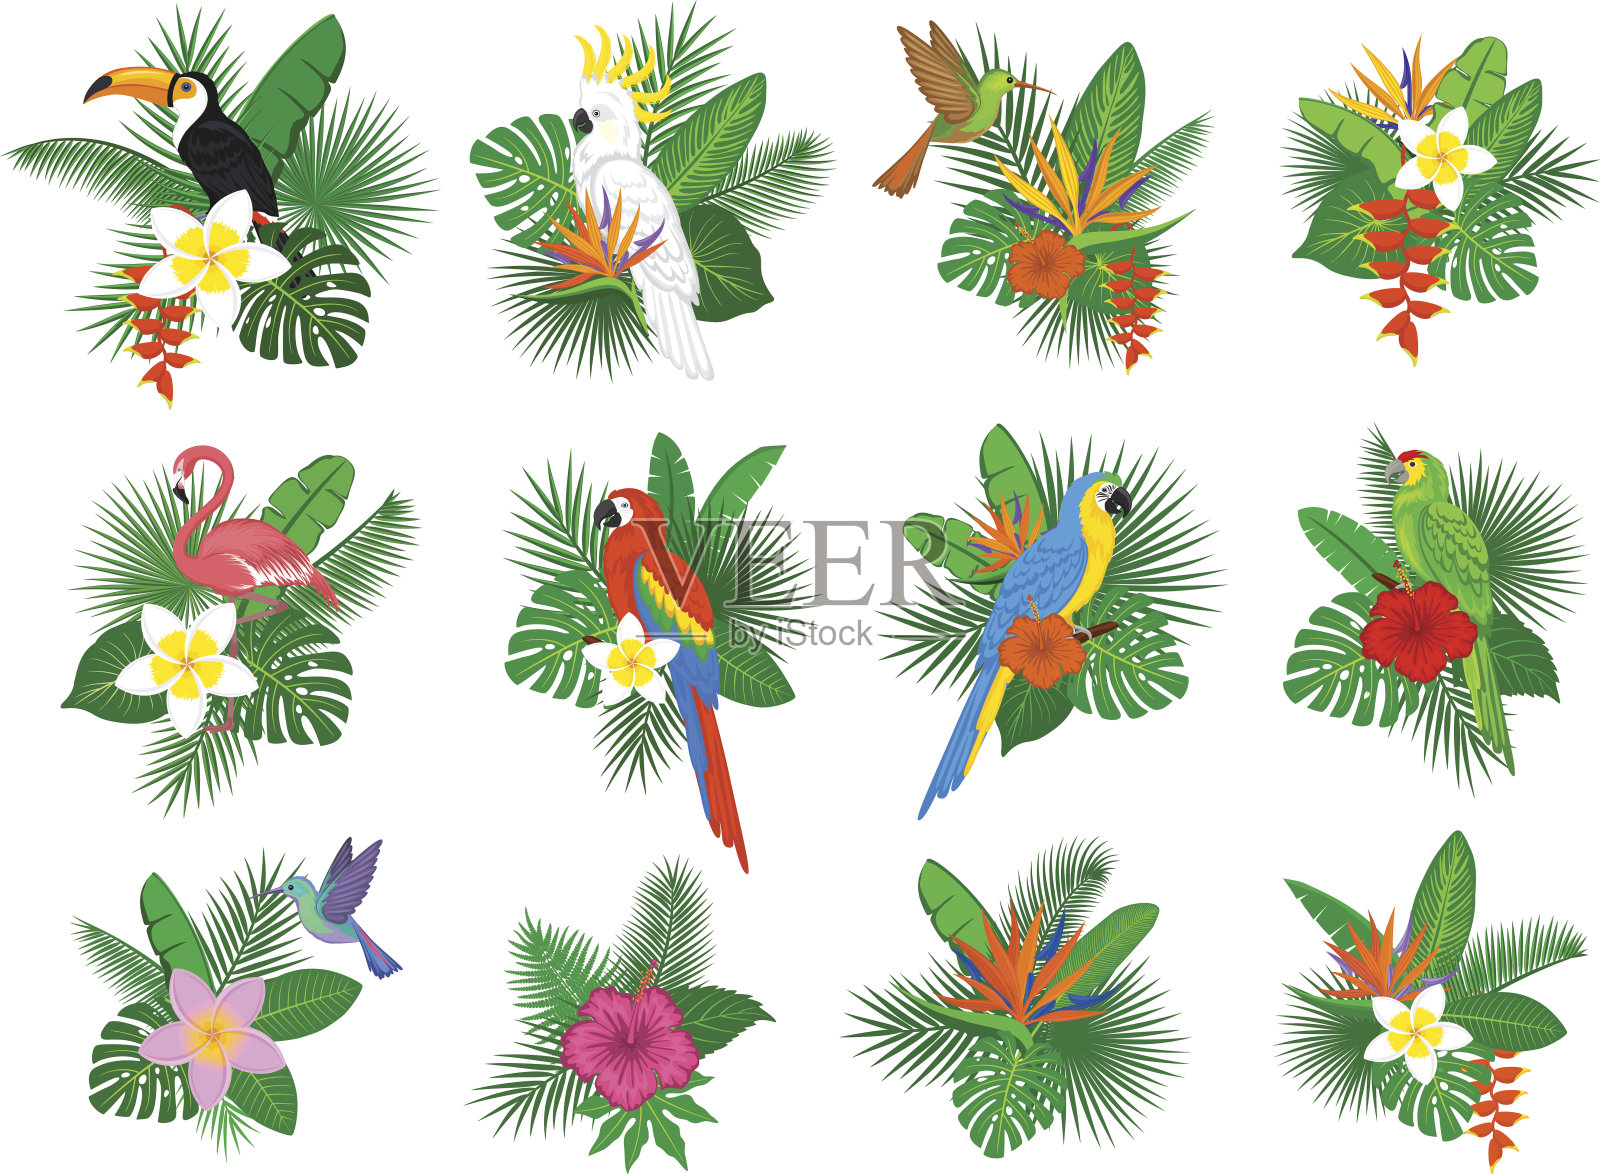 热带植物与火烈鸟、鹦鹉、巨嘴鸟、蜂鸟、木槿、木犀草、鸡蛋花、螺旋花排列设计元素图片